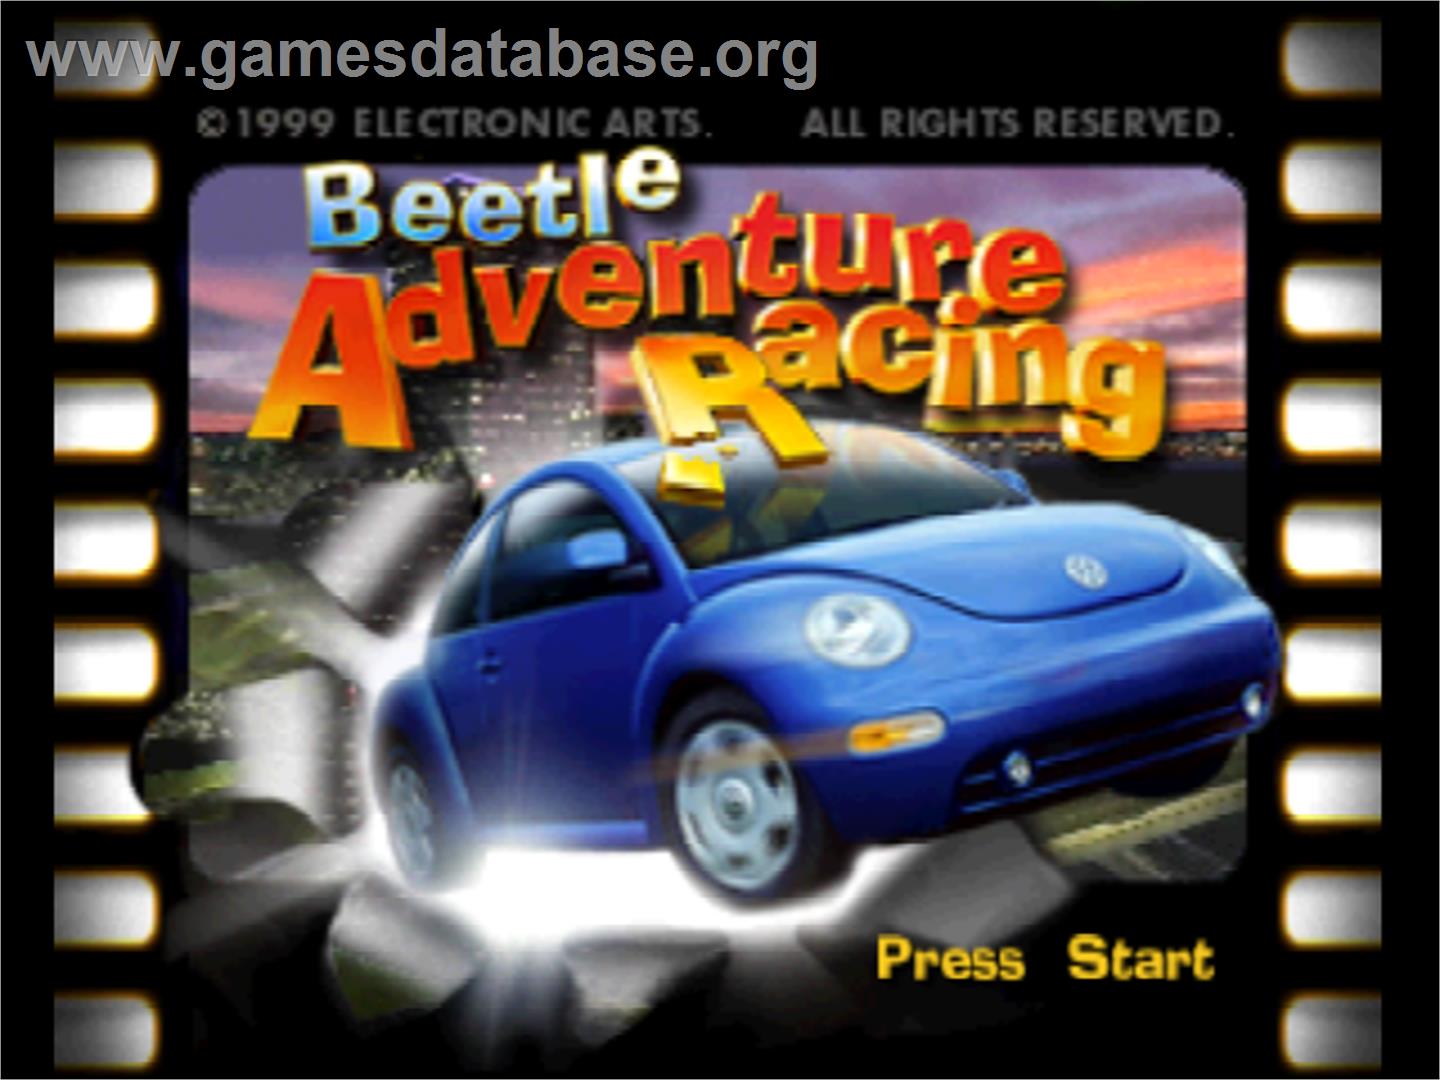 Beetle Adventure Racing - Nintendo N64 - Artwork - Title Screen